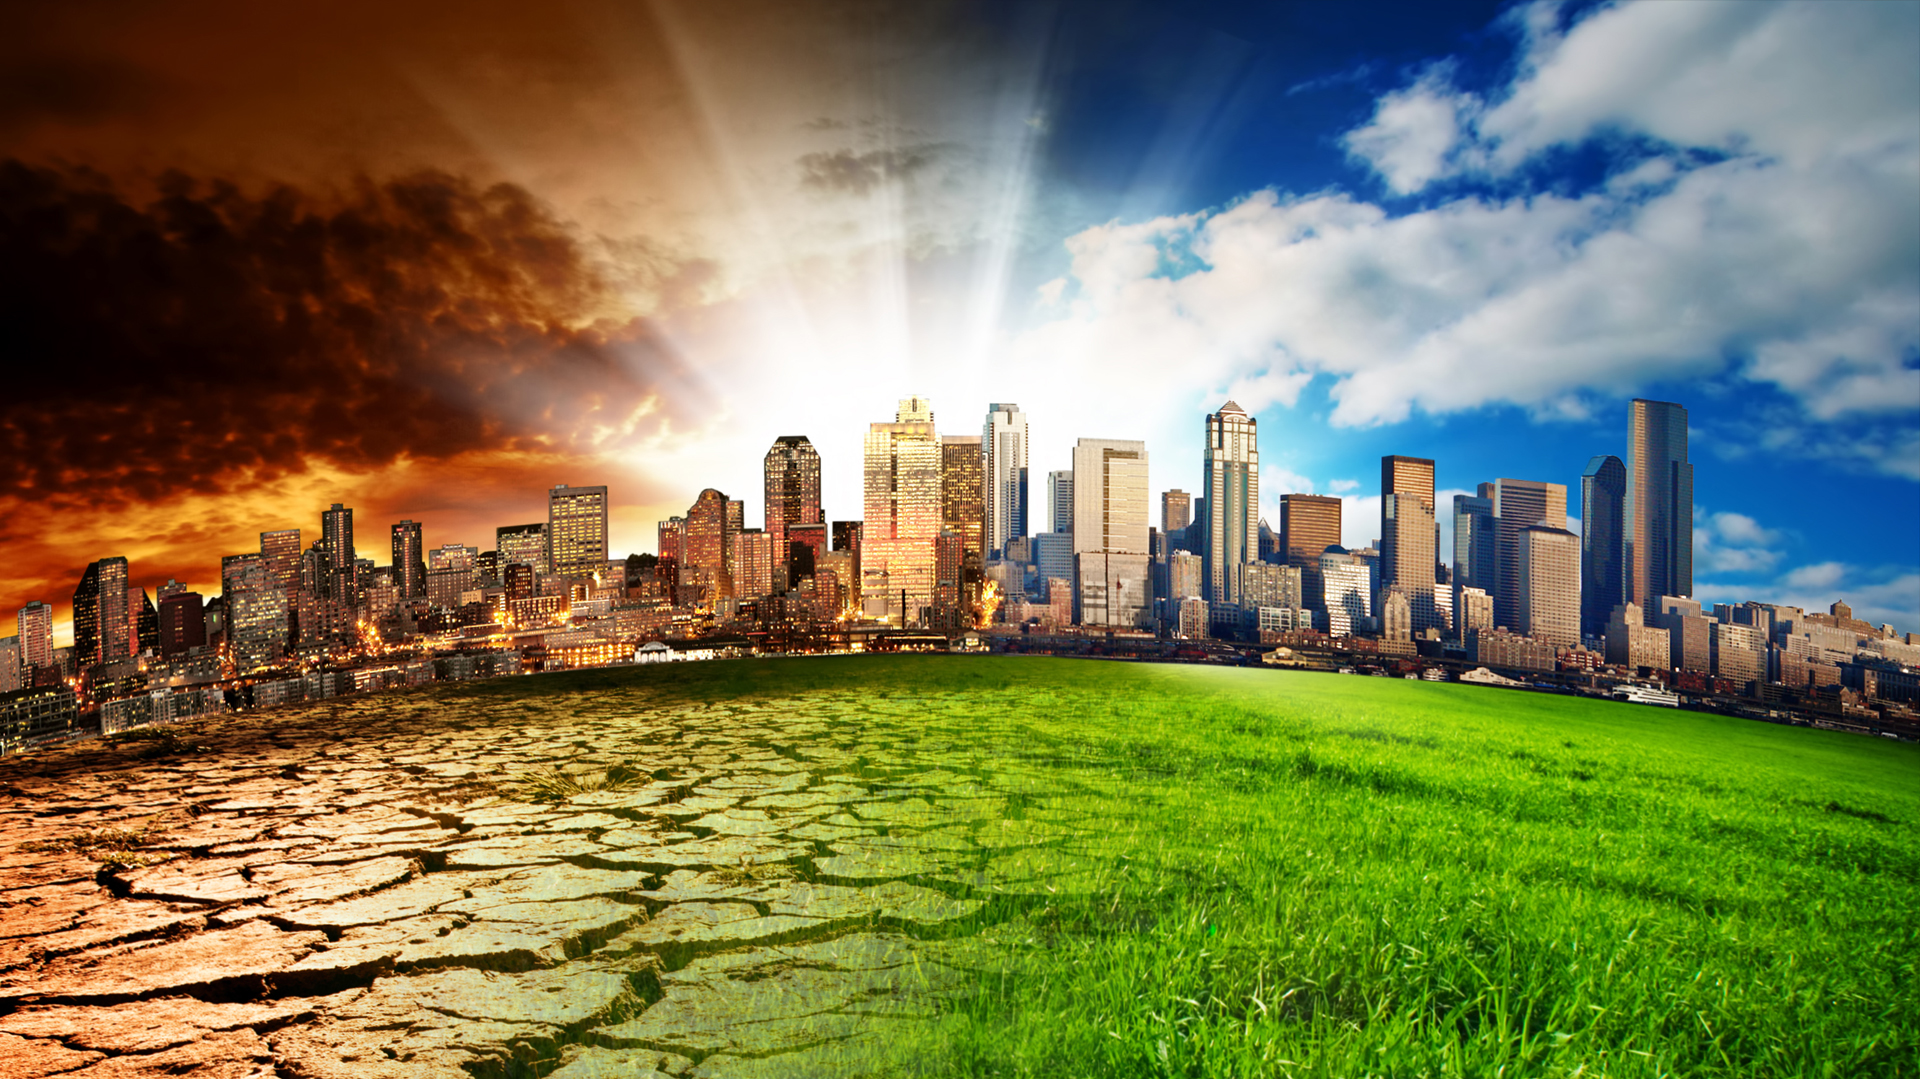 Las ciudades son unas de las principales responsables del aumento de la temperatura del planeta, pero también pueden ser parte de la solución, según indican los expertos / (iStock)